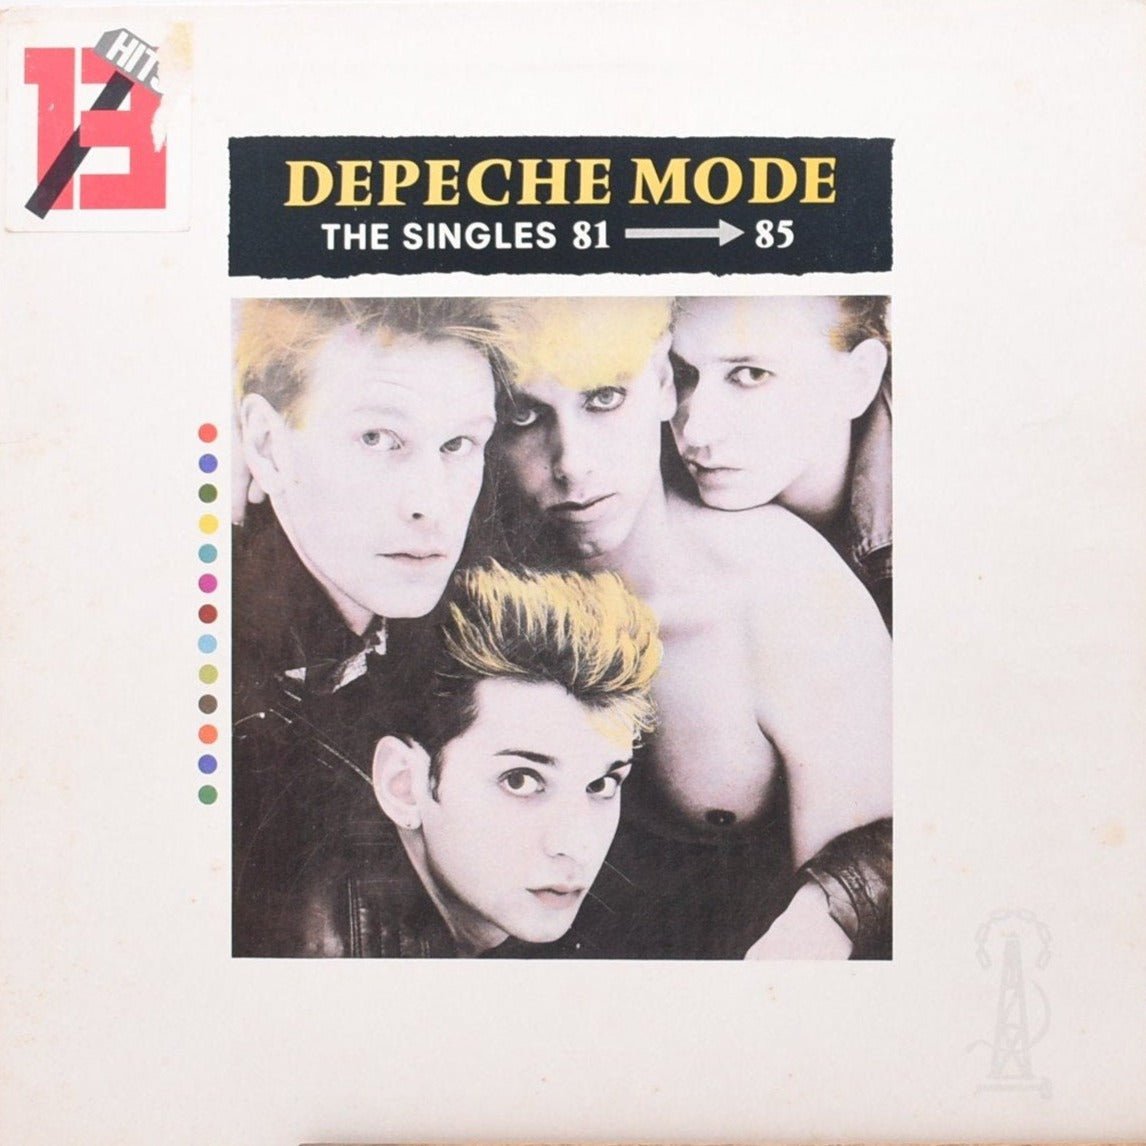 Depeche Mode - The Singles 81 → 85 Vinyl